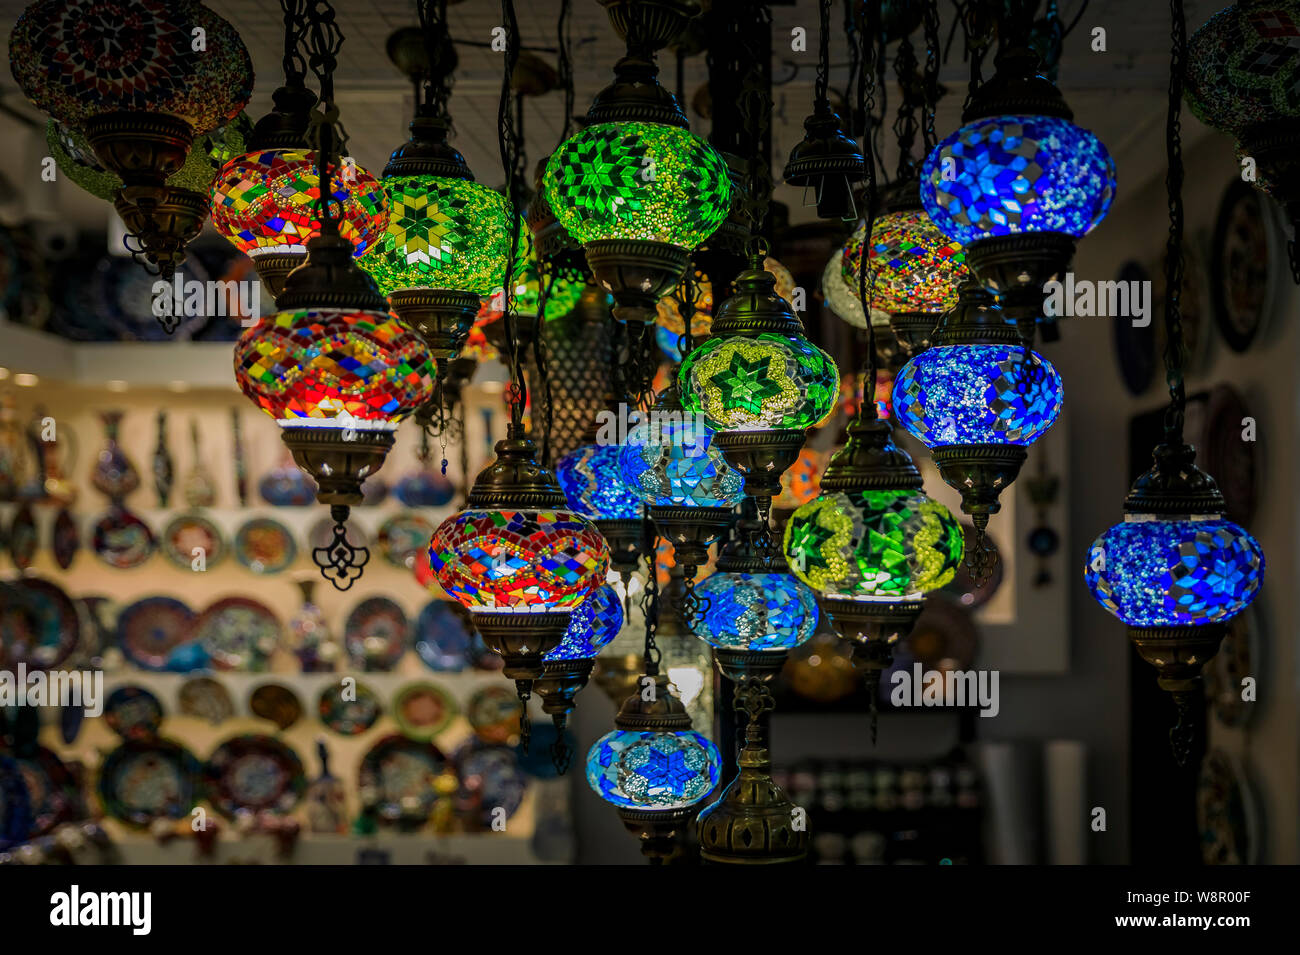 Traditionelle bunte Dekorative vintage Türkisch orientalische Lampen zum  Verkauf in einem der vielen Souvenir Geschäfte in Kotor in Montenegro  Stockfotografie - Alamy